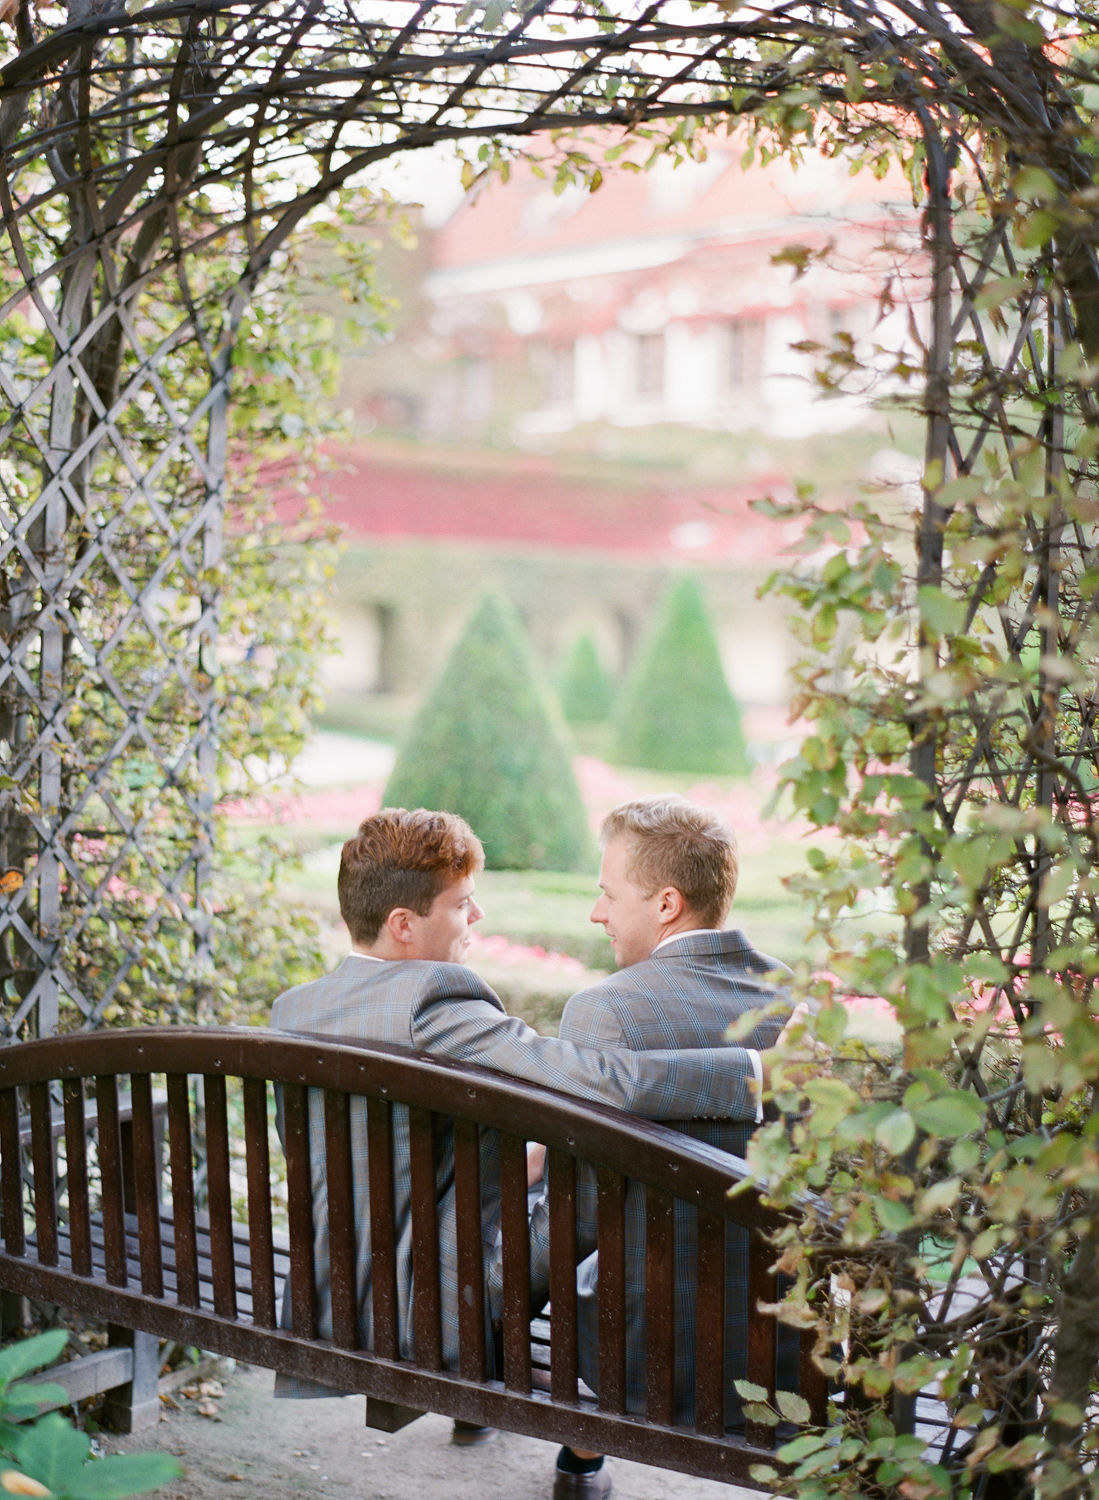 Vrtba Gardens - Weddings in Prague - Julie May